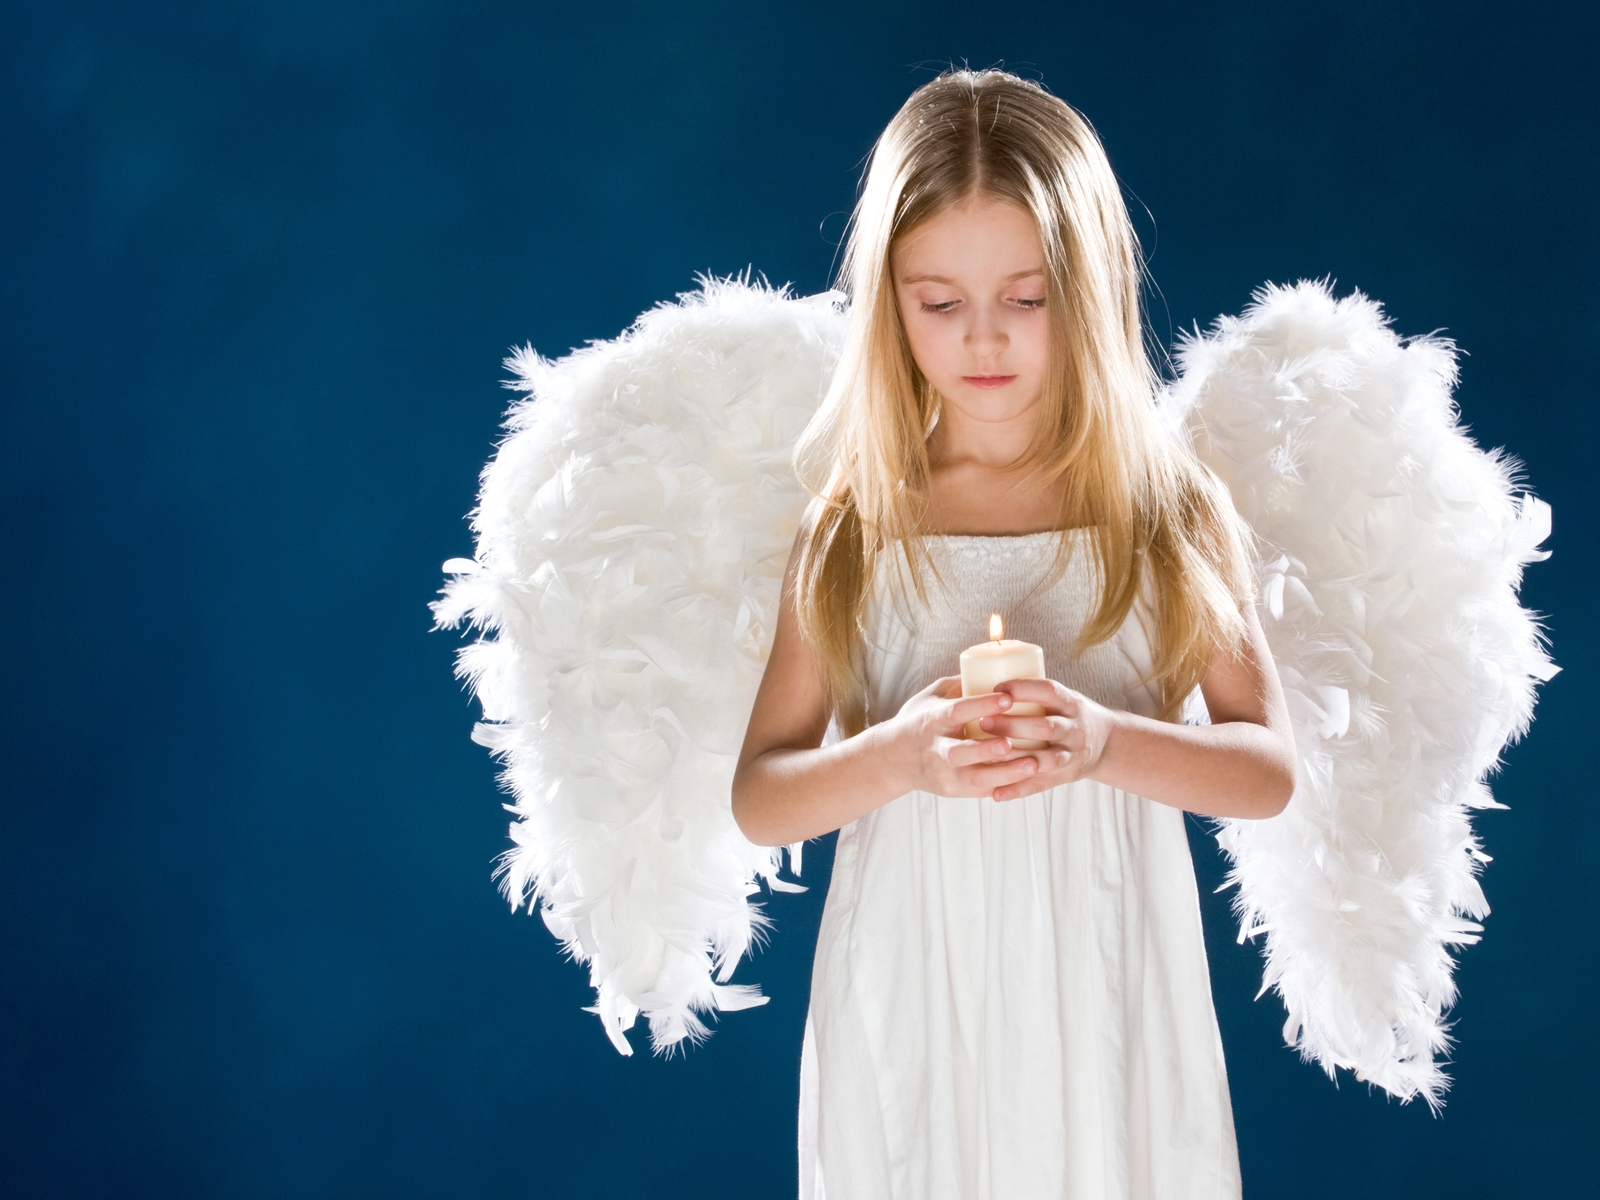 Little Angel Girl for 1600 x 1200 resolution